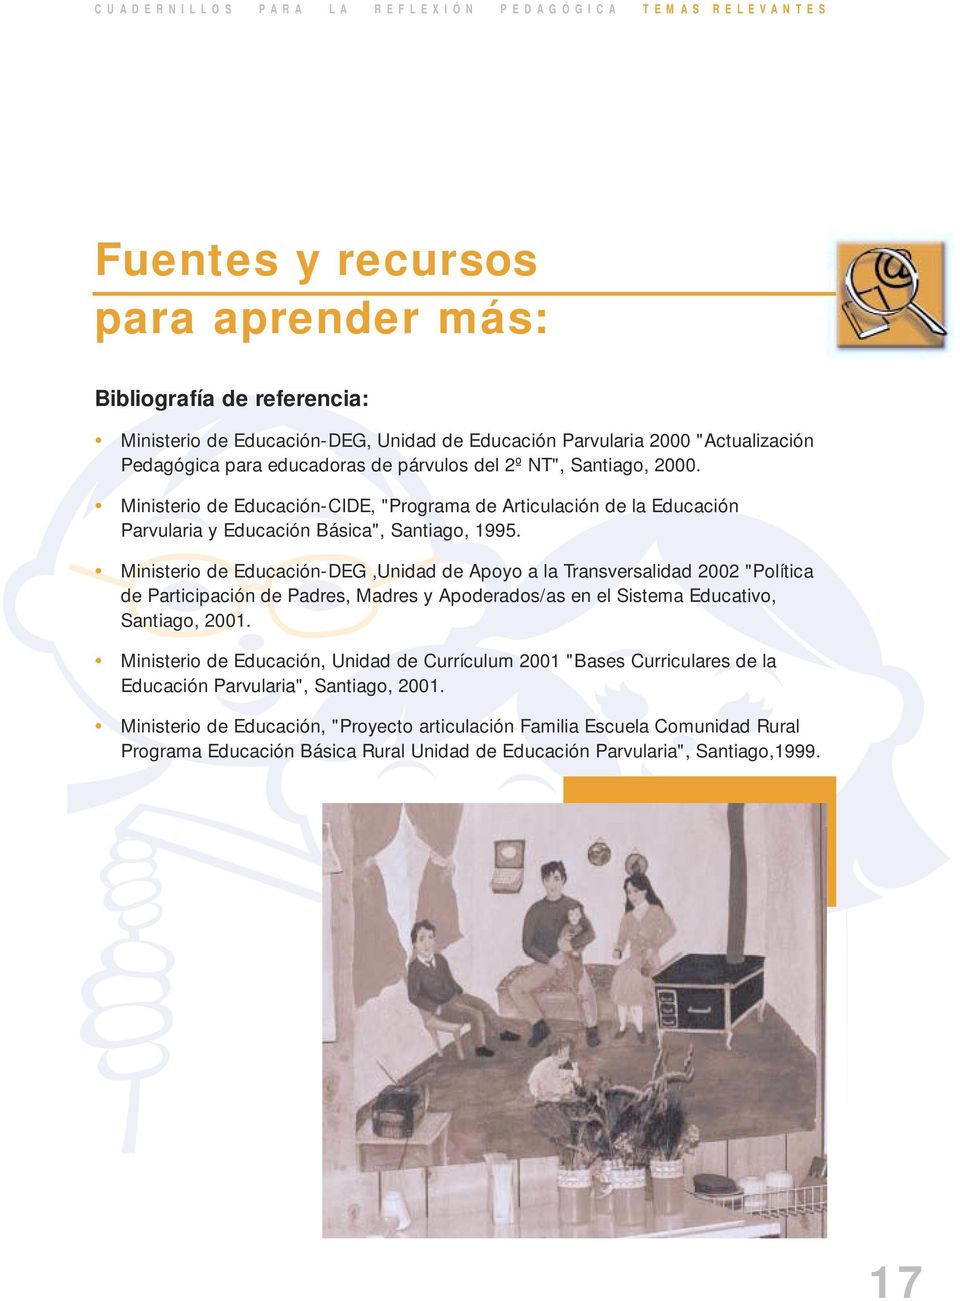 Ministerio de Educación-CIDE, "Programa de Articulación de la Educación Parvularia y Educación Básica", Santiago, 1995.